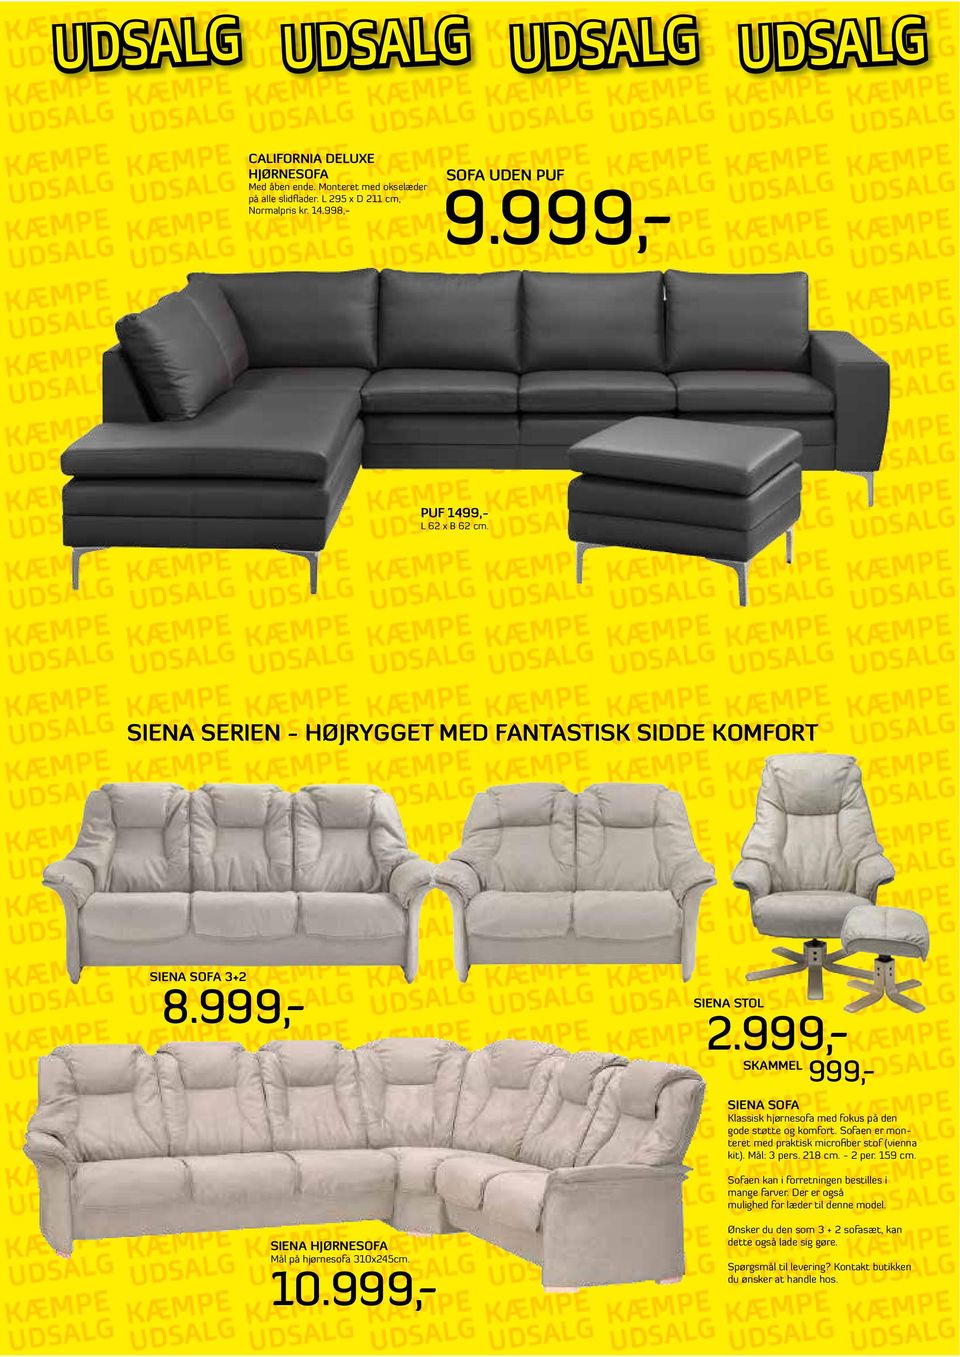 Sofaen er monteret med praktisk microfiber stof (vienna kit). Mål: 3 pers. 218 cm. - 2 per. 159 cm. Sofaen kan i forretningen bestilles i mange farver.